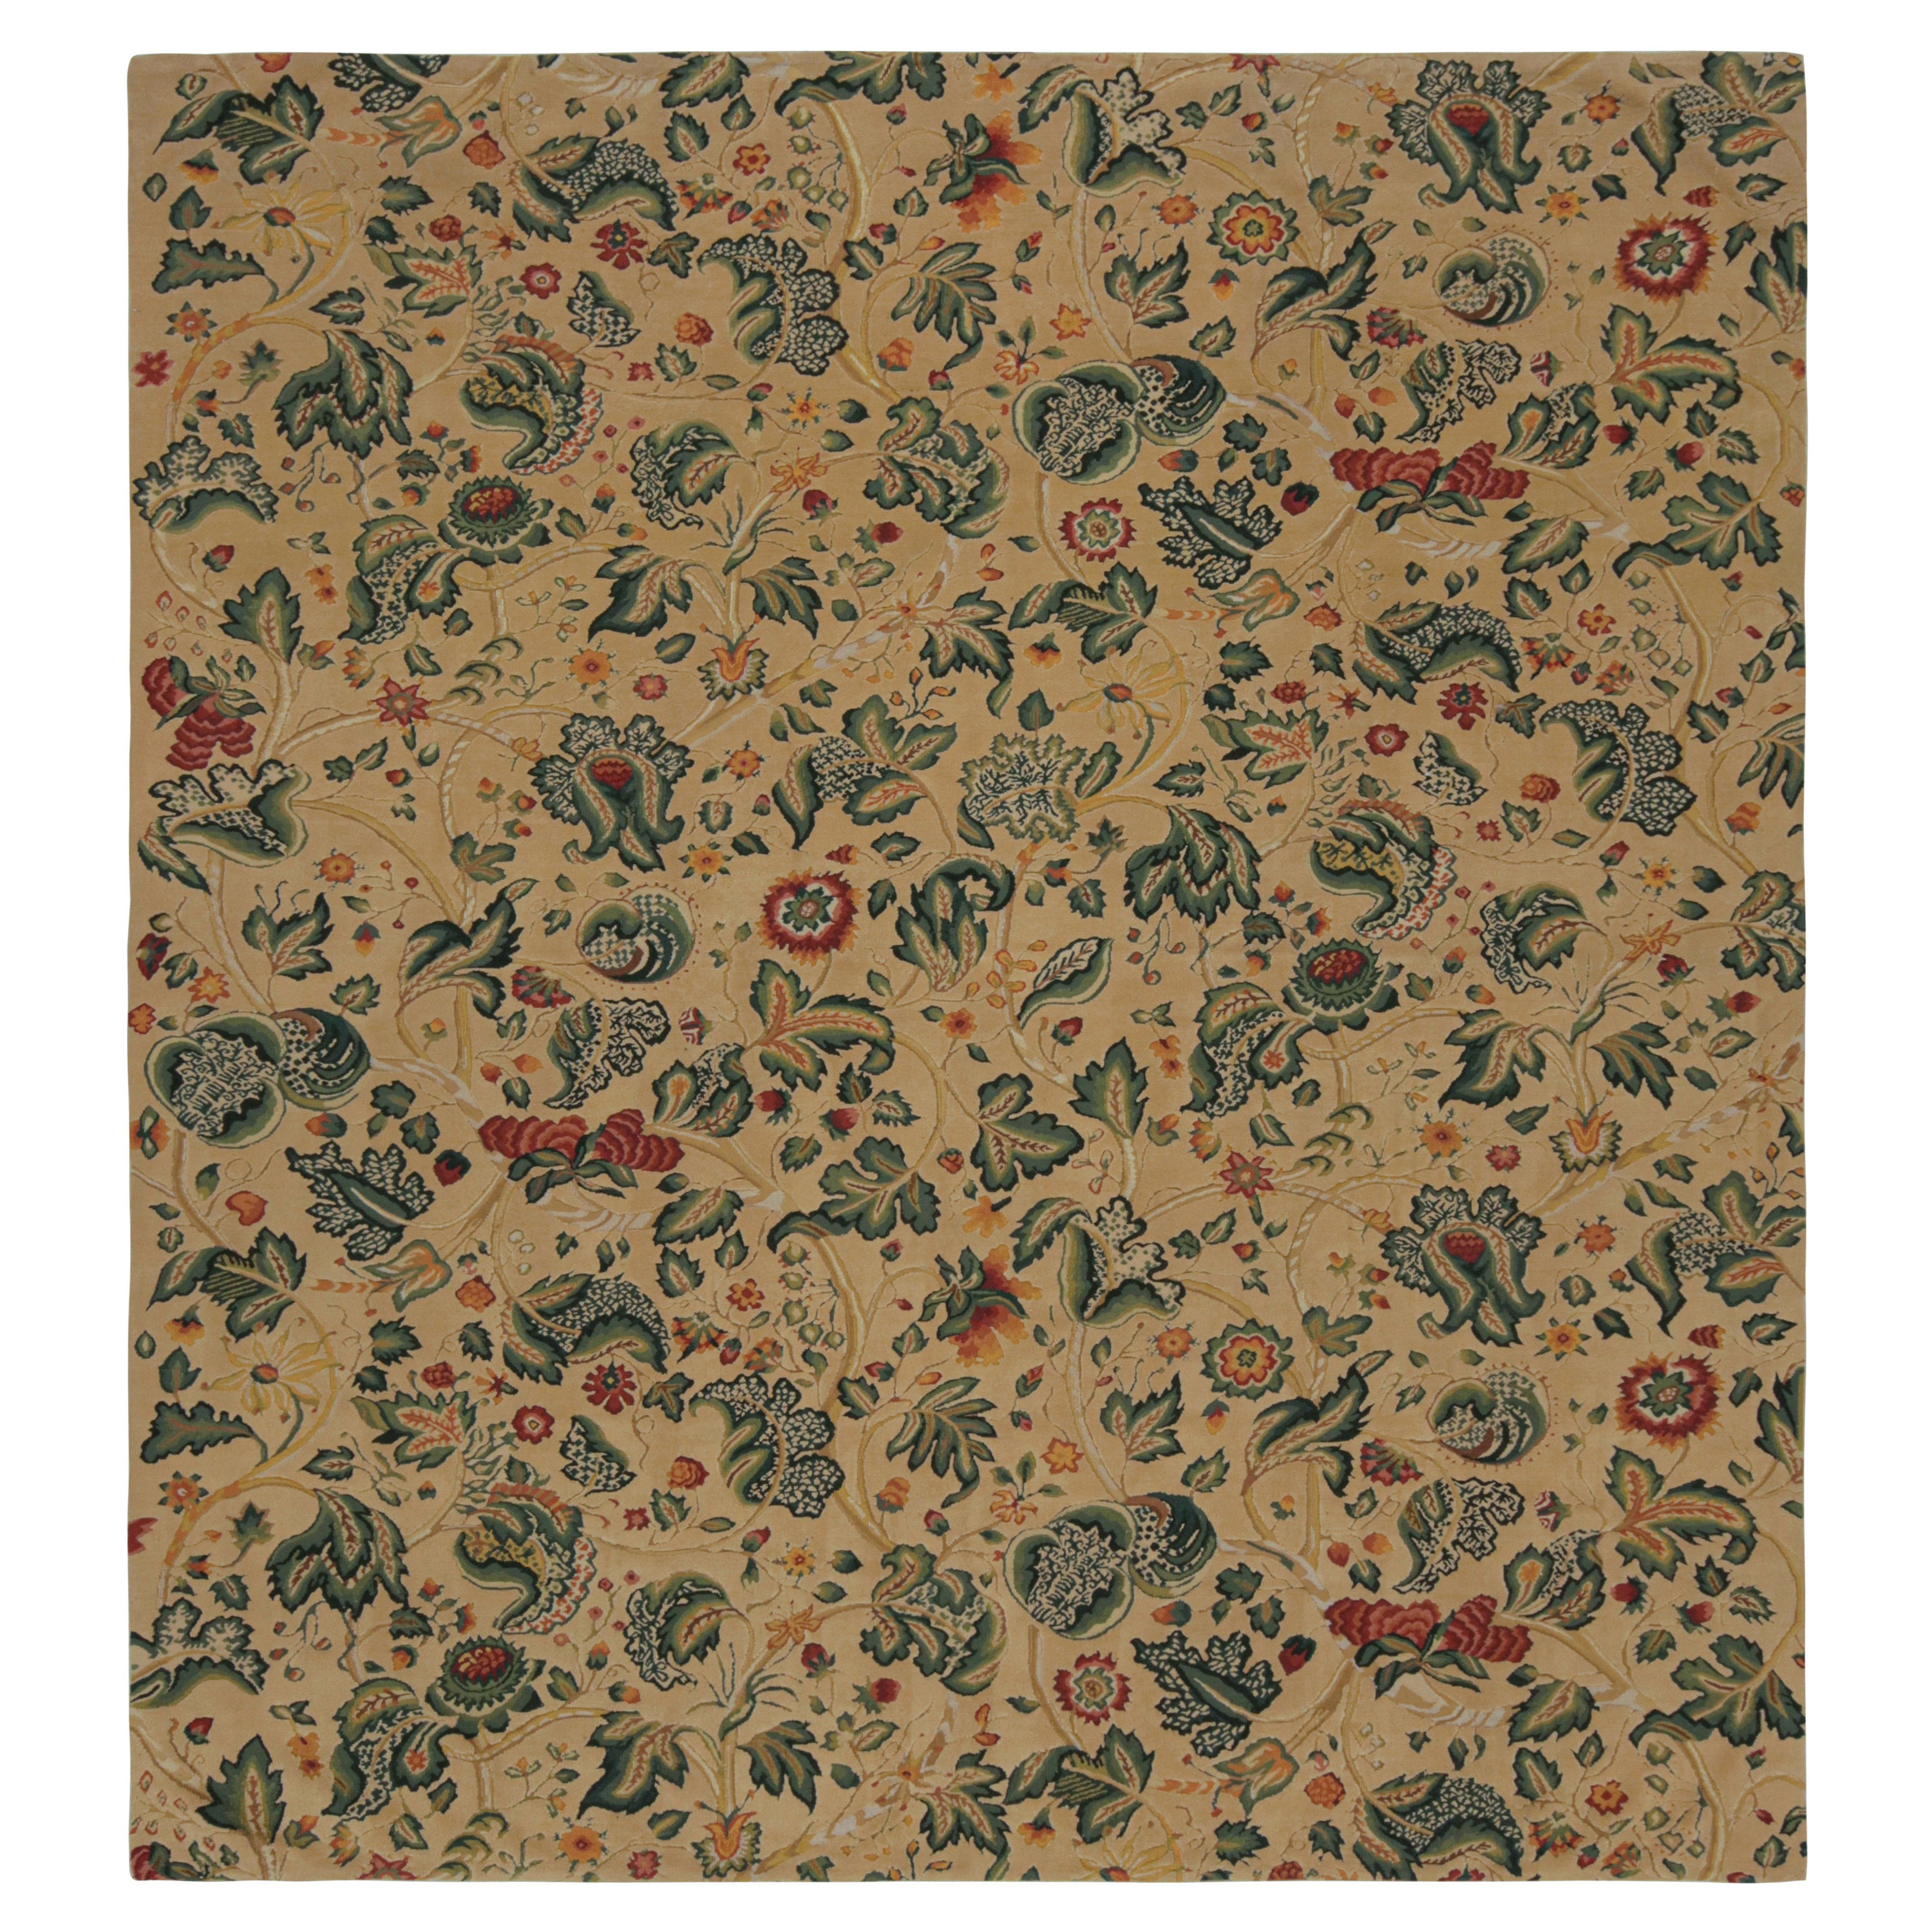 Rug & Kilim's Flachgewebe-Teppich in Creme mit Blumenmuster 'Tudor' im europäischen Stil